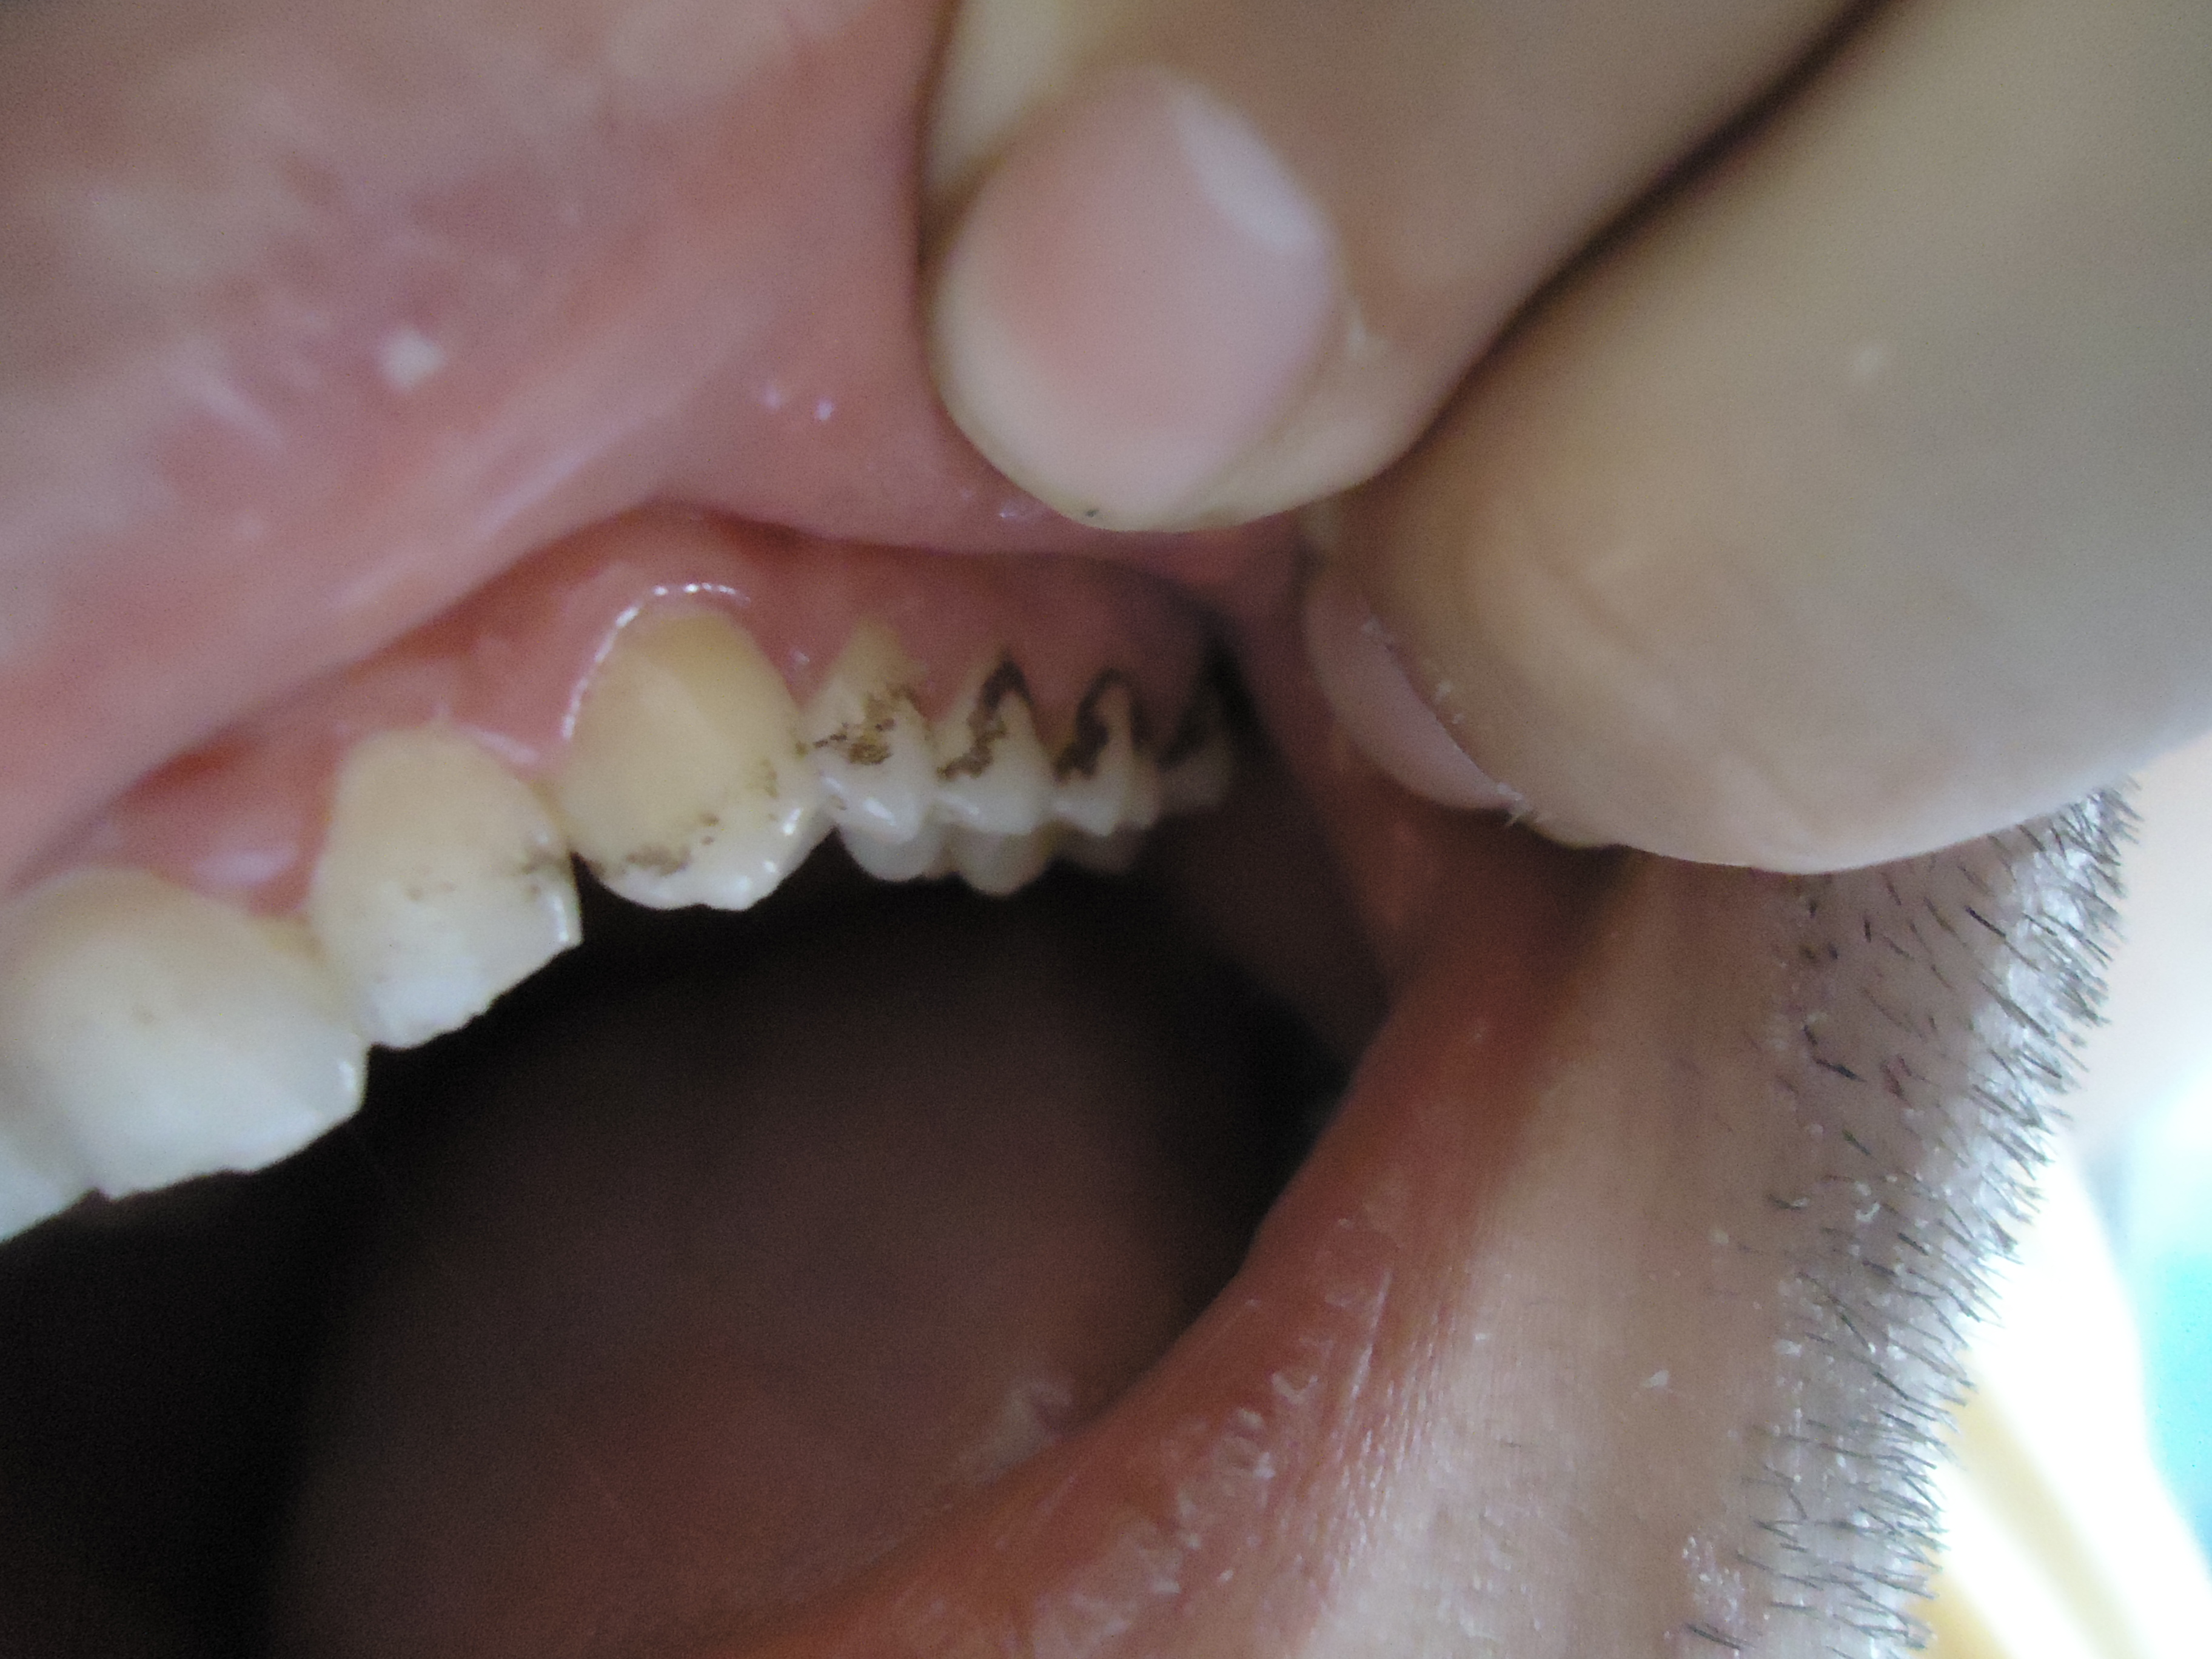 Ho notato che nei denti sia superiori che inferiori si sono formate delle macchie nere